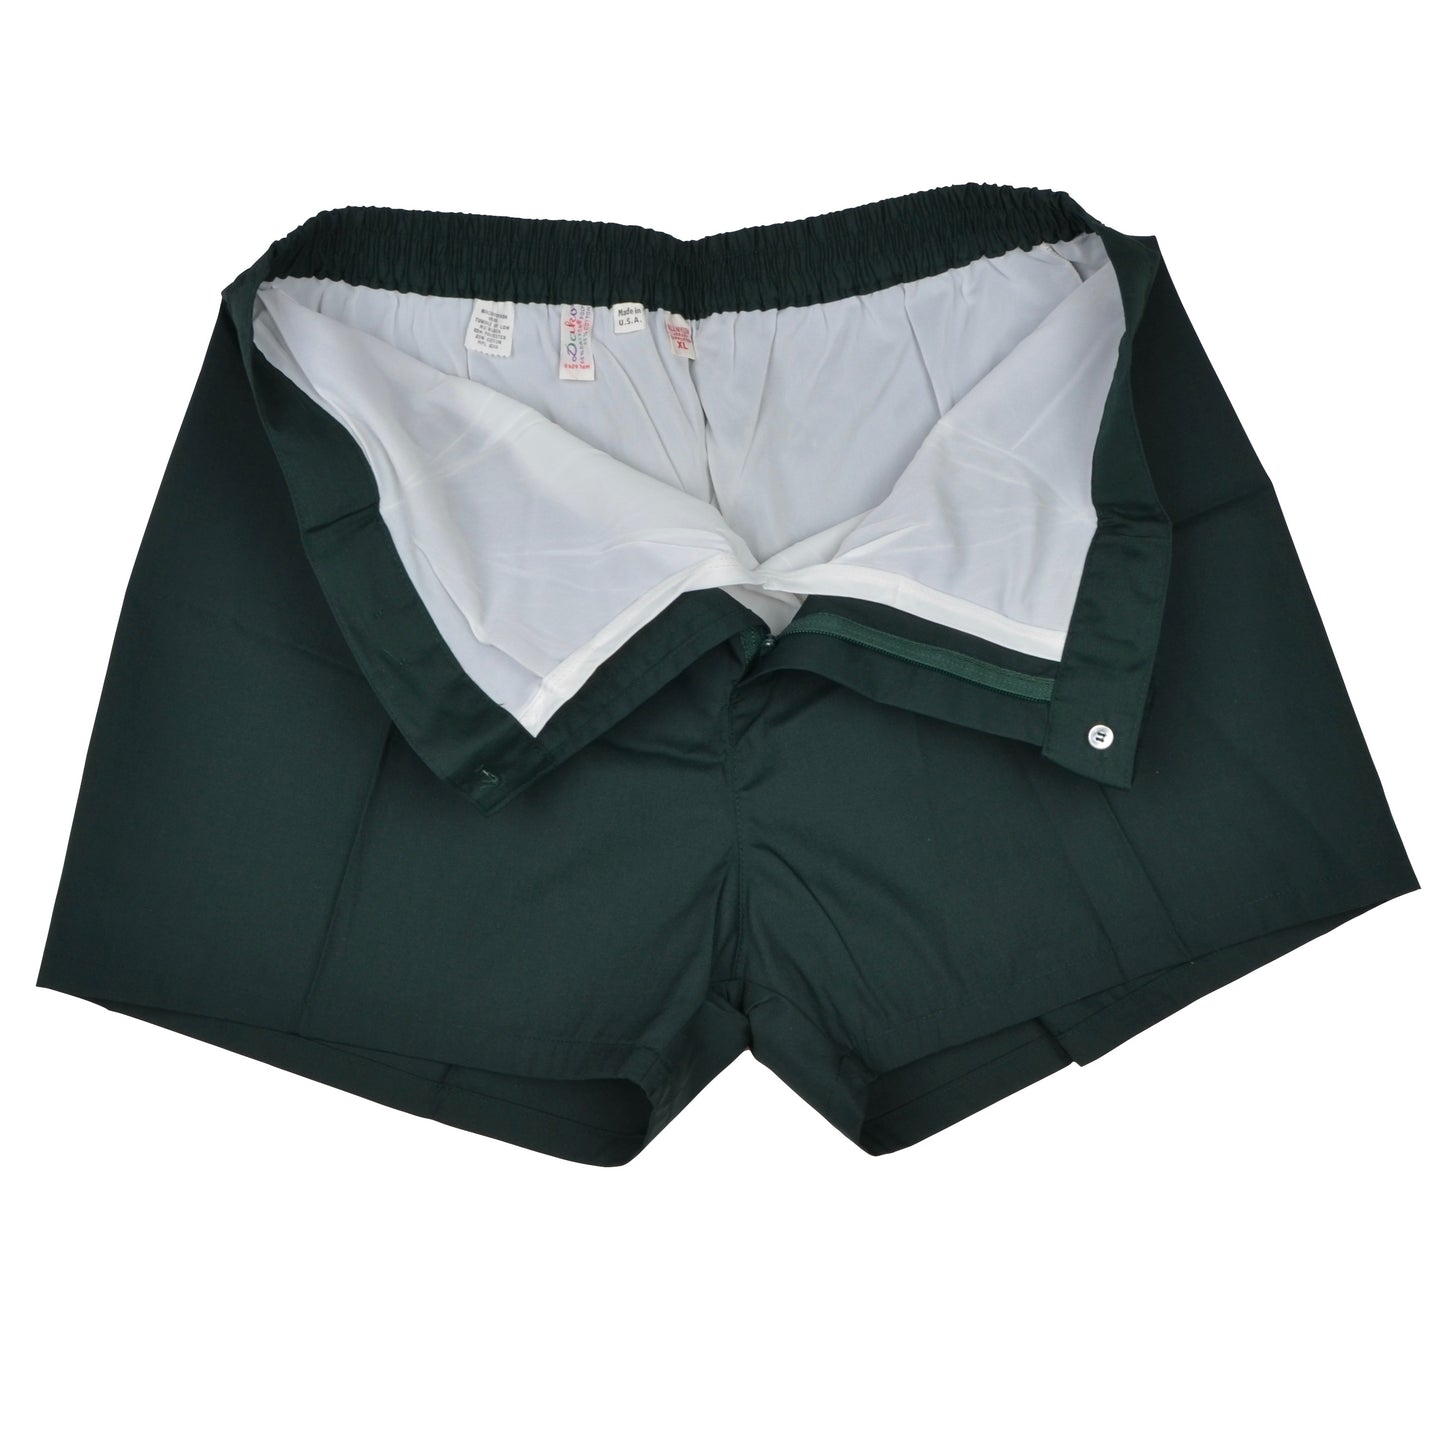 Vintage NOS Swim Shorts Size XL - Dark Green